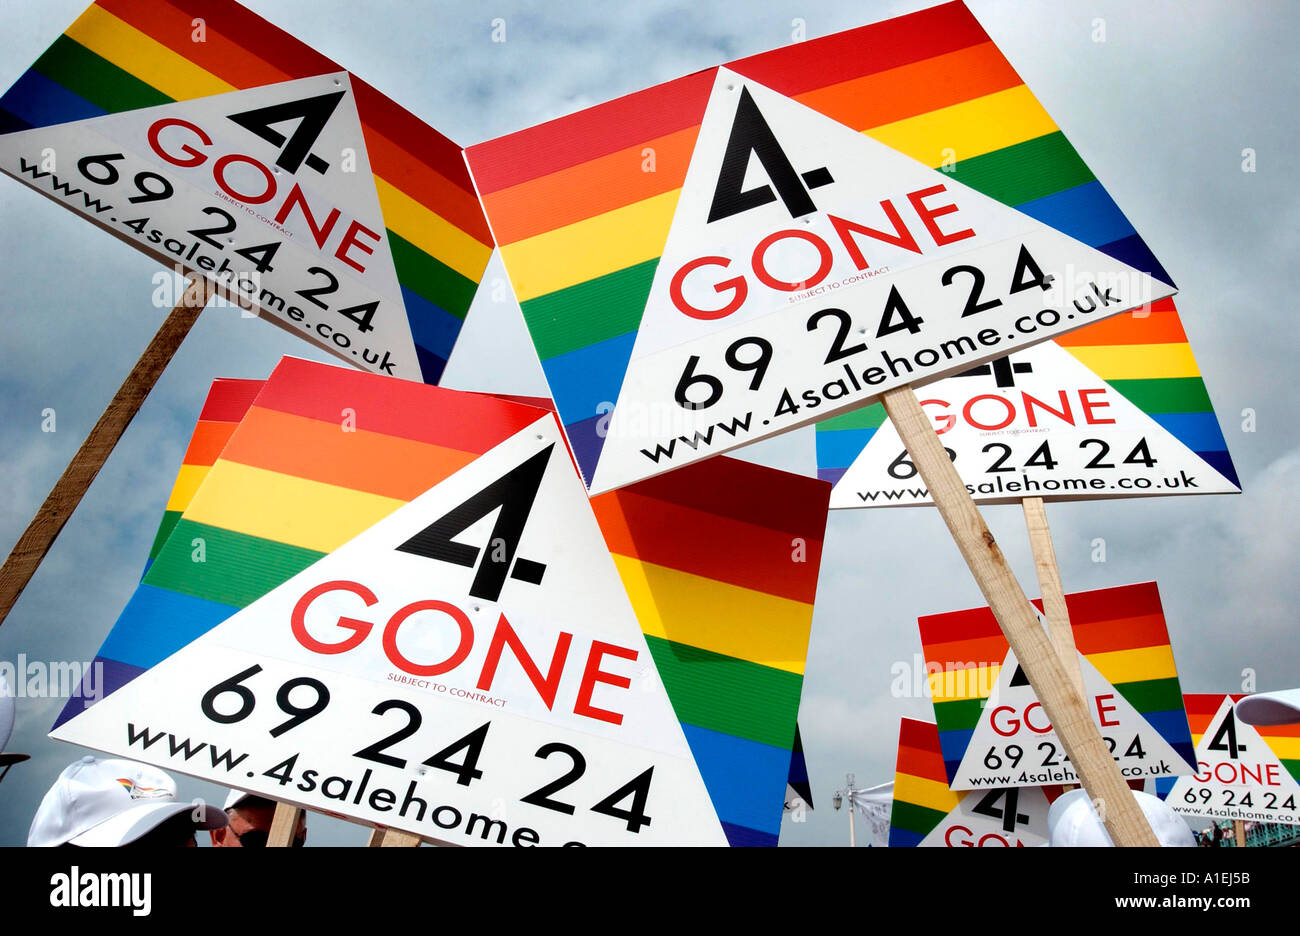 Britains première Gay estate agents, une entreprise basée à Brighton, afficher leurs couleurs sur leurs panneaux 'vendu' à rayures Banque D'Images